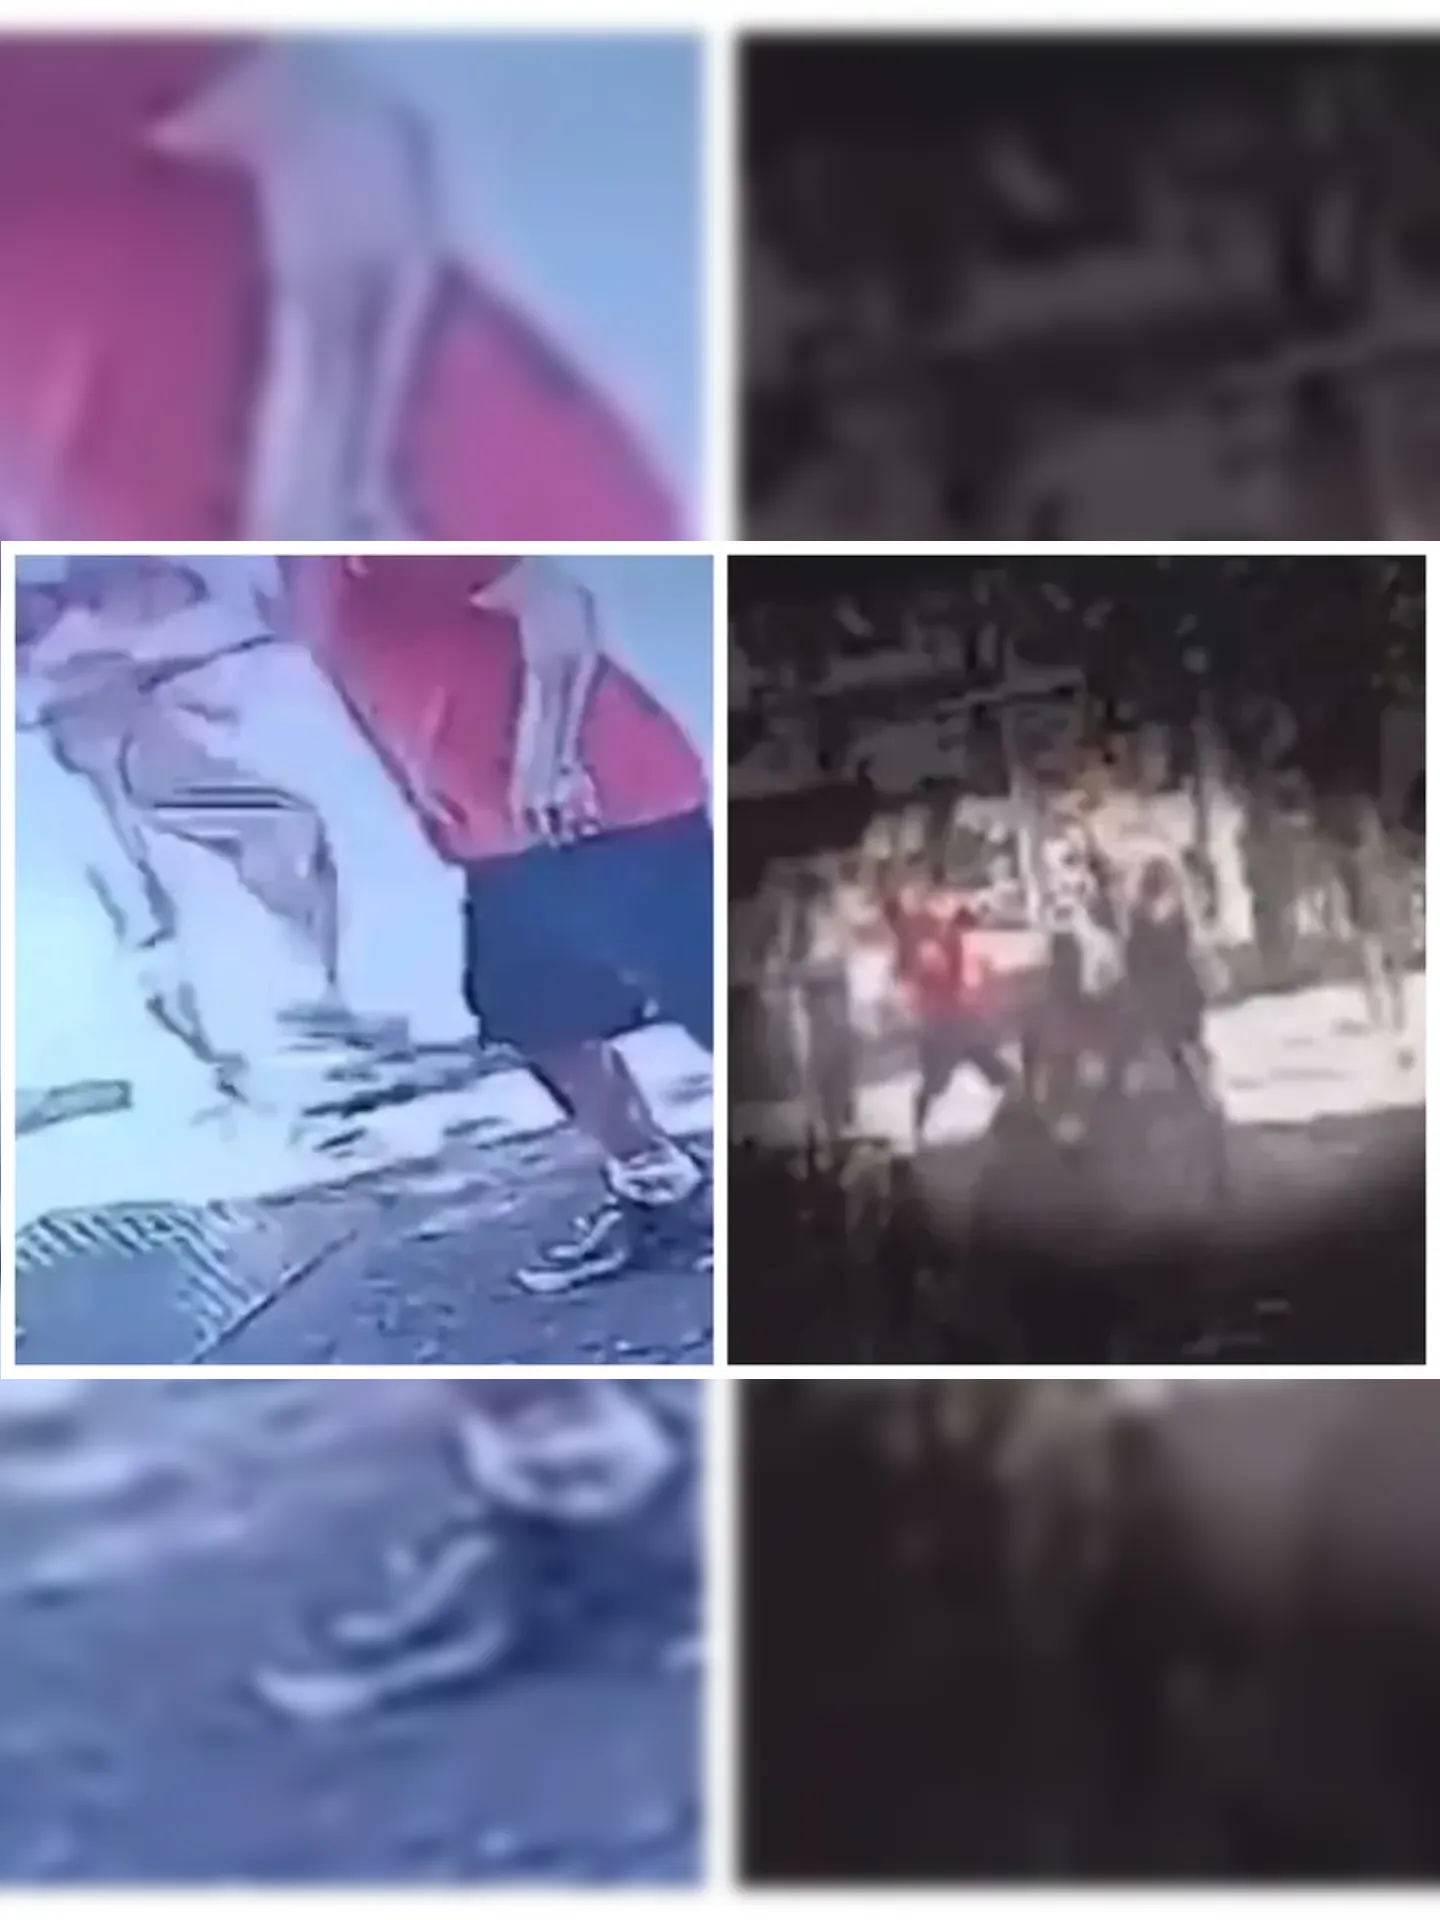 Imagens capturadas por câmeras de segurança revelam um homem de estatura média